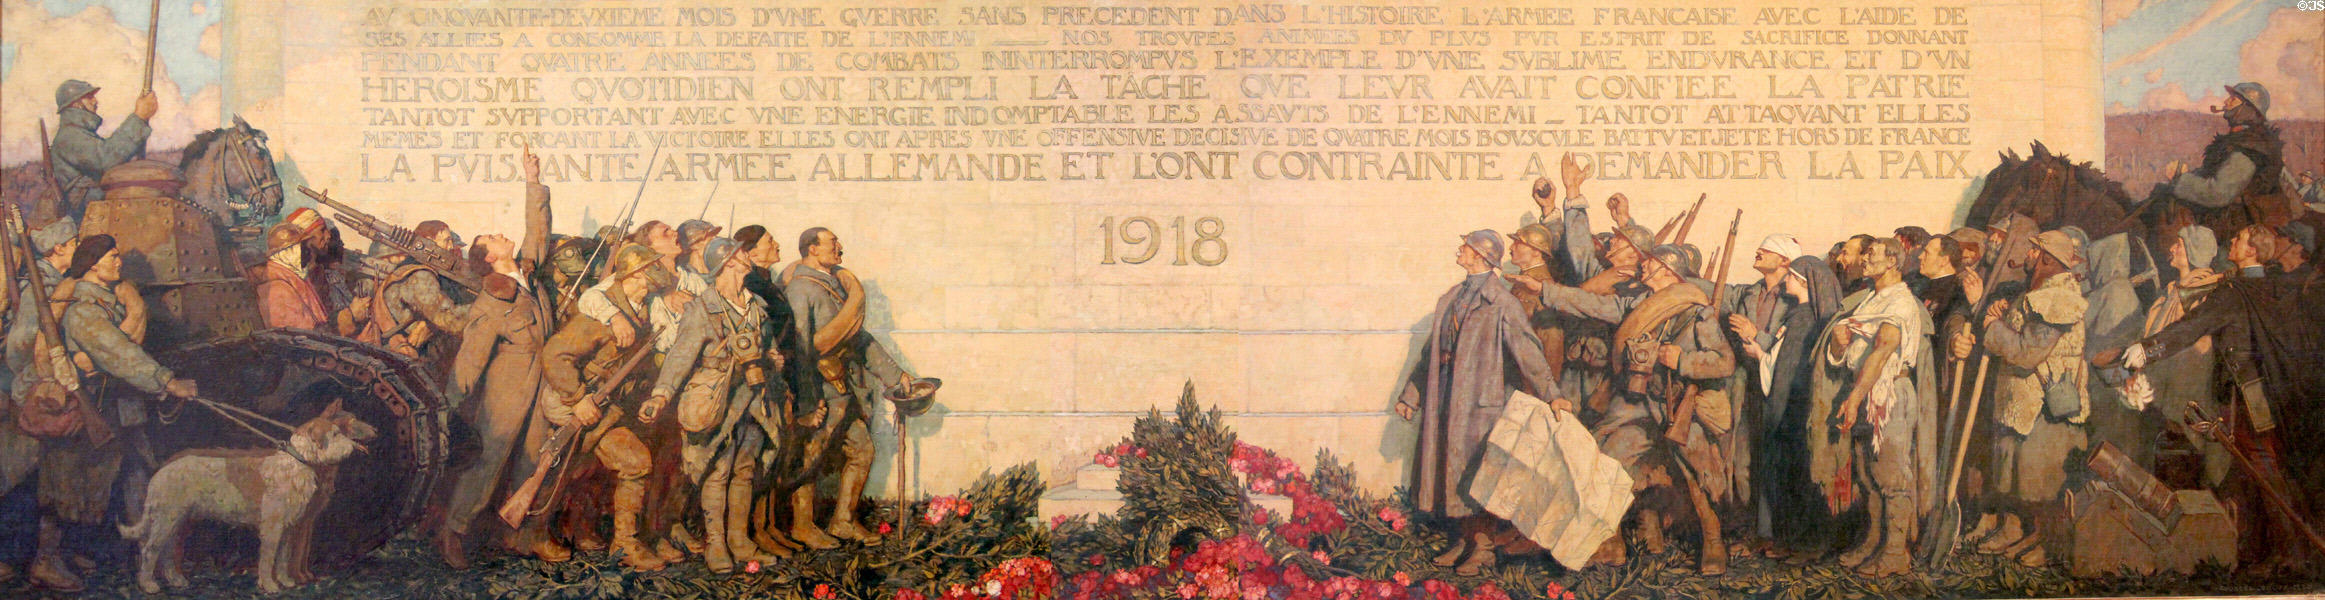 Last Communiqué ending war Nov. 11, 1918 painting (1920) by George Leroux at Petit Palace Museum. Paris, France.